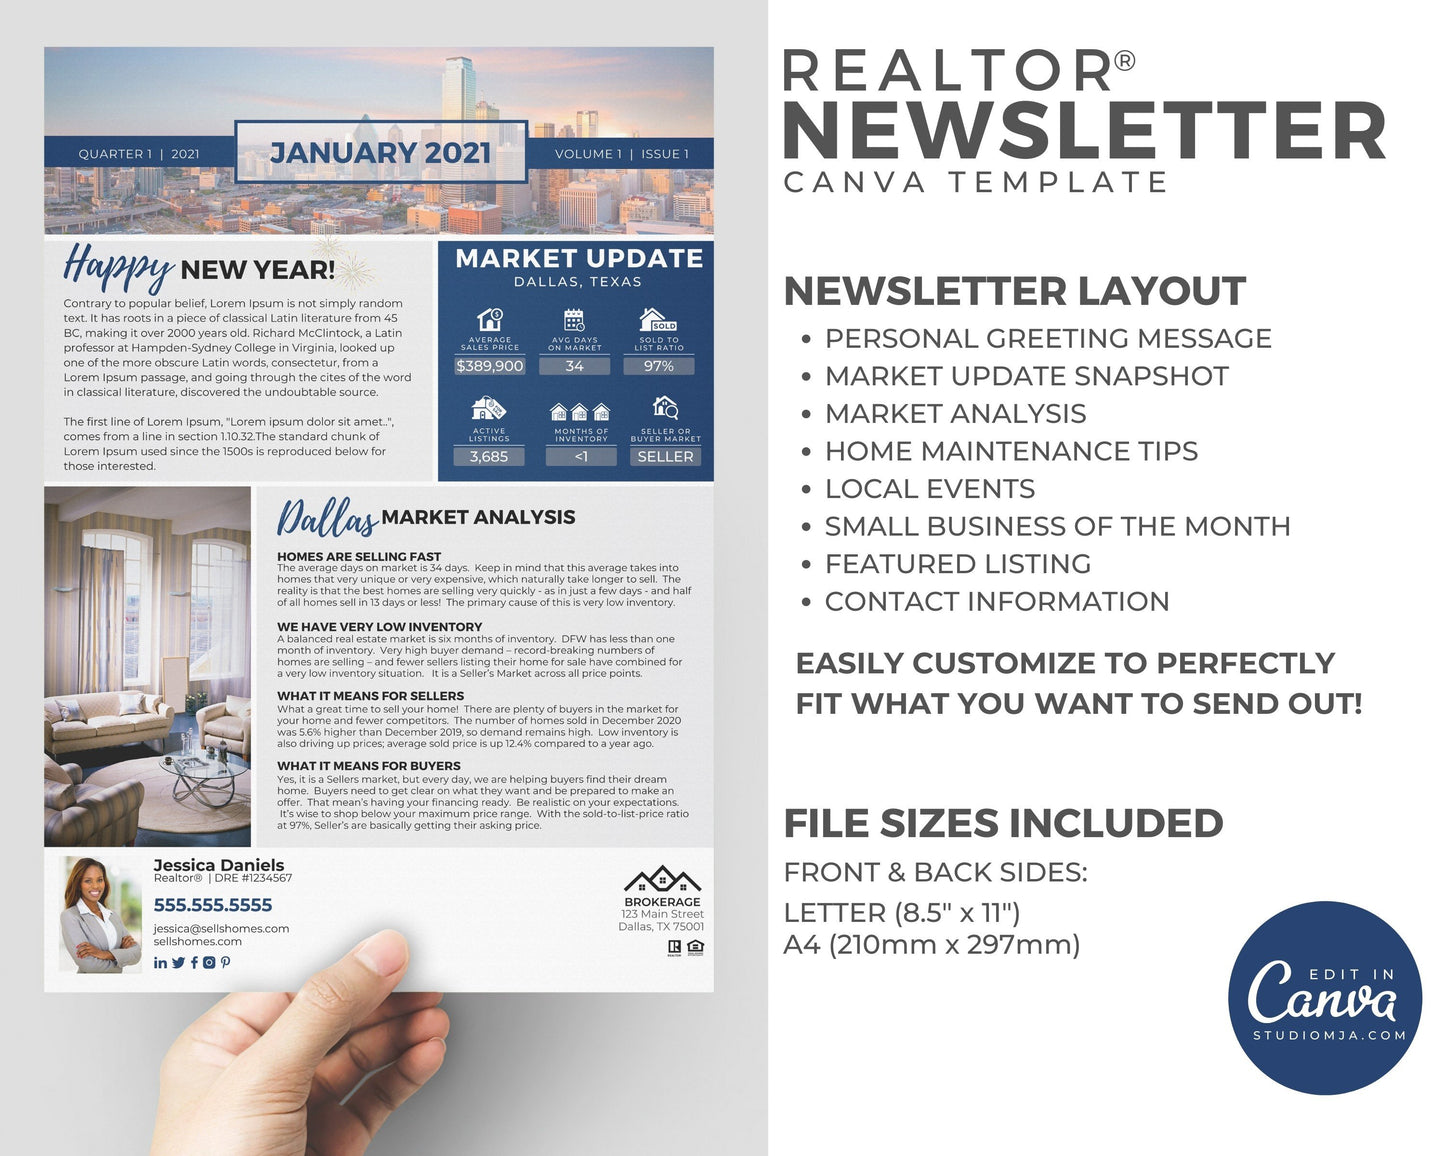 Realtor Newsletter Template - January